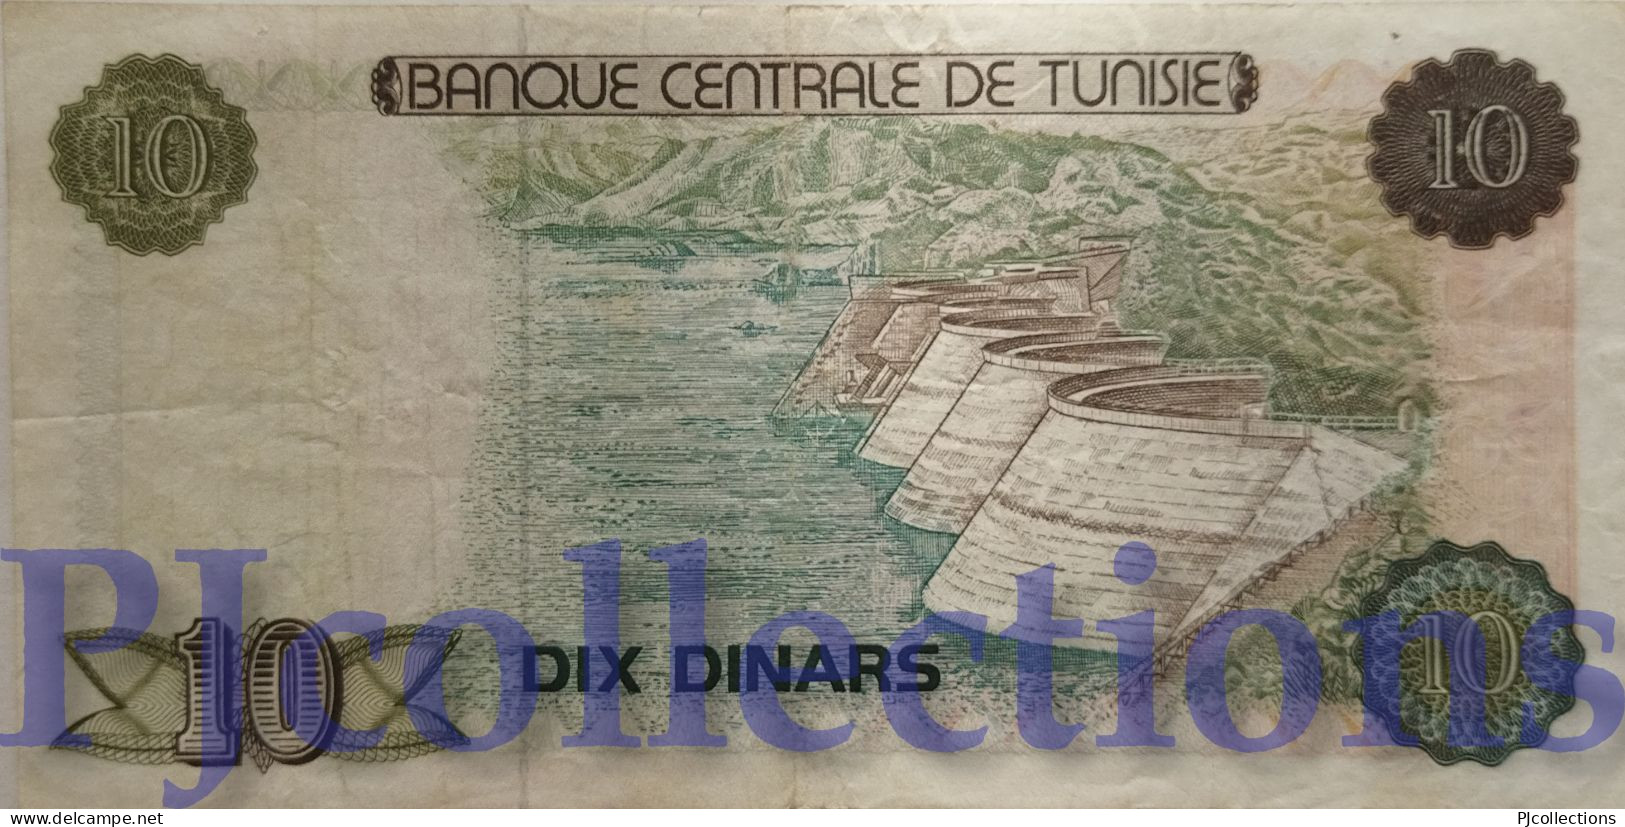 TUNISIA 10 DINARS 1980 PICK 76 XF - Tunesien